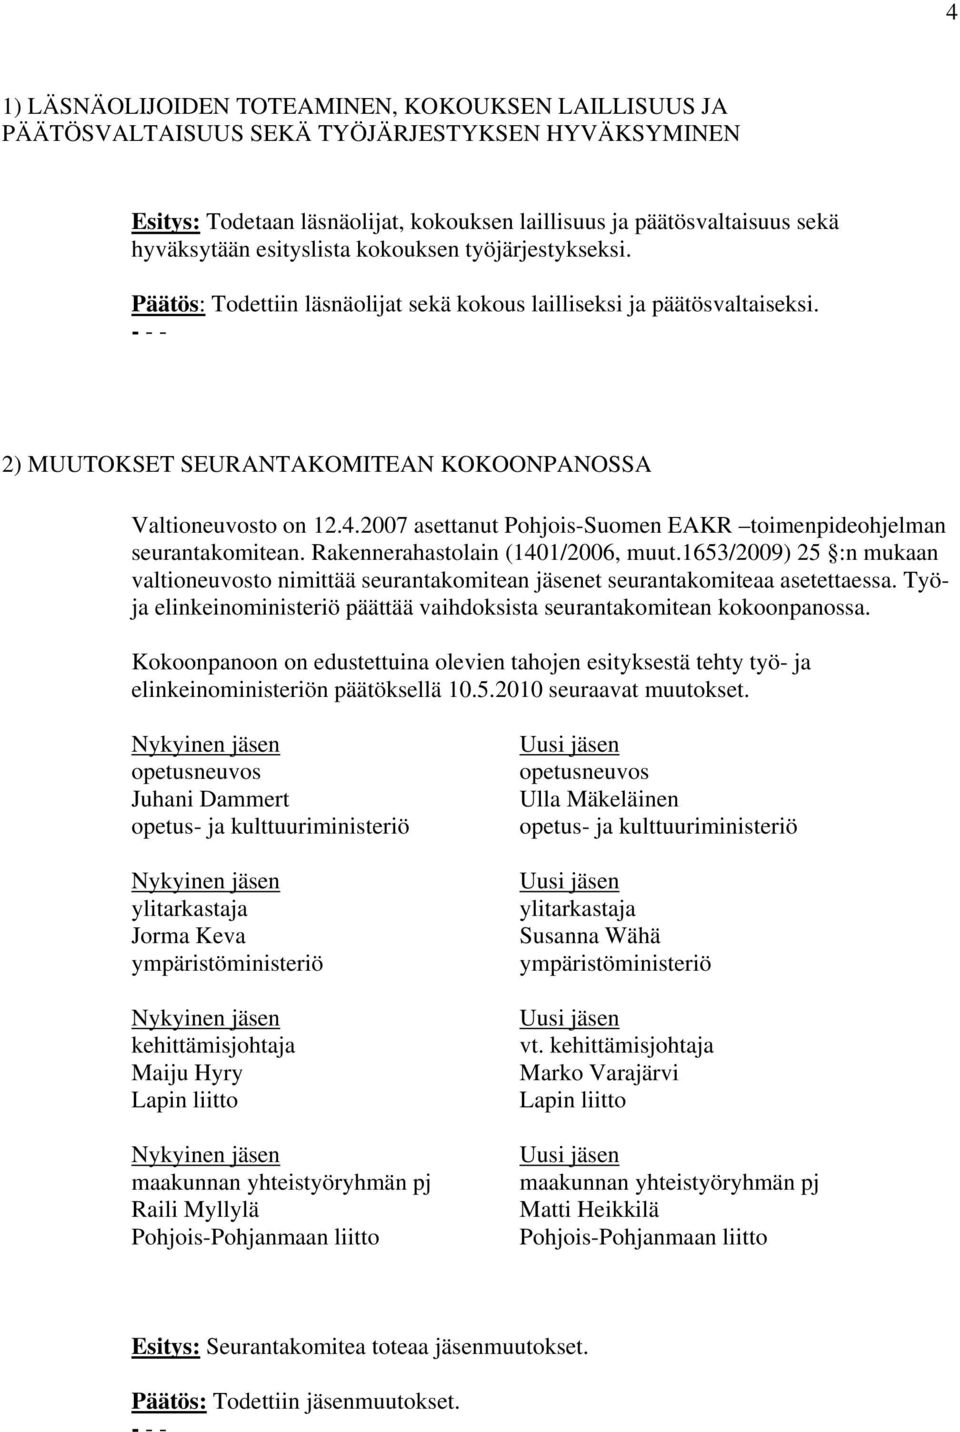 2007 asettanut Pohjois-Suomen EAKR toimenpideohjelman seurantakomitean. Rakennerahastolain (1401/2006, muut.